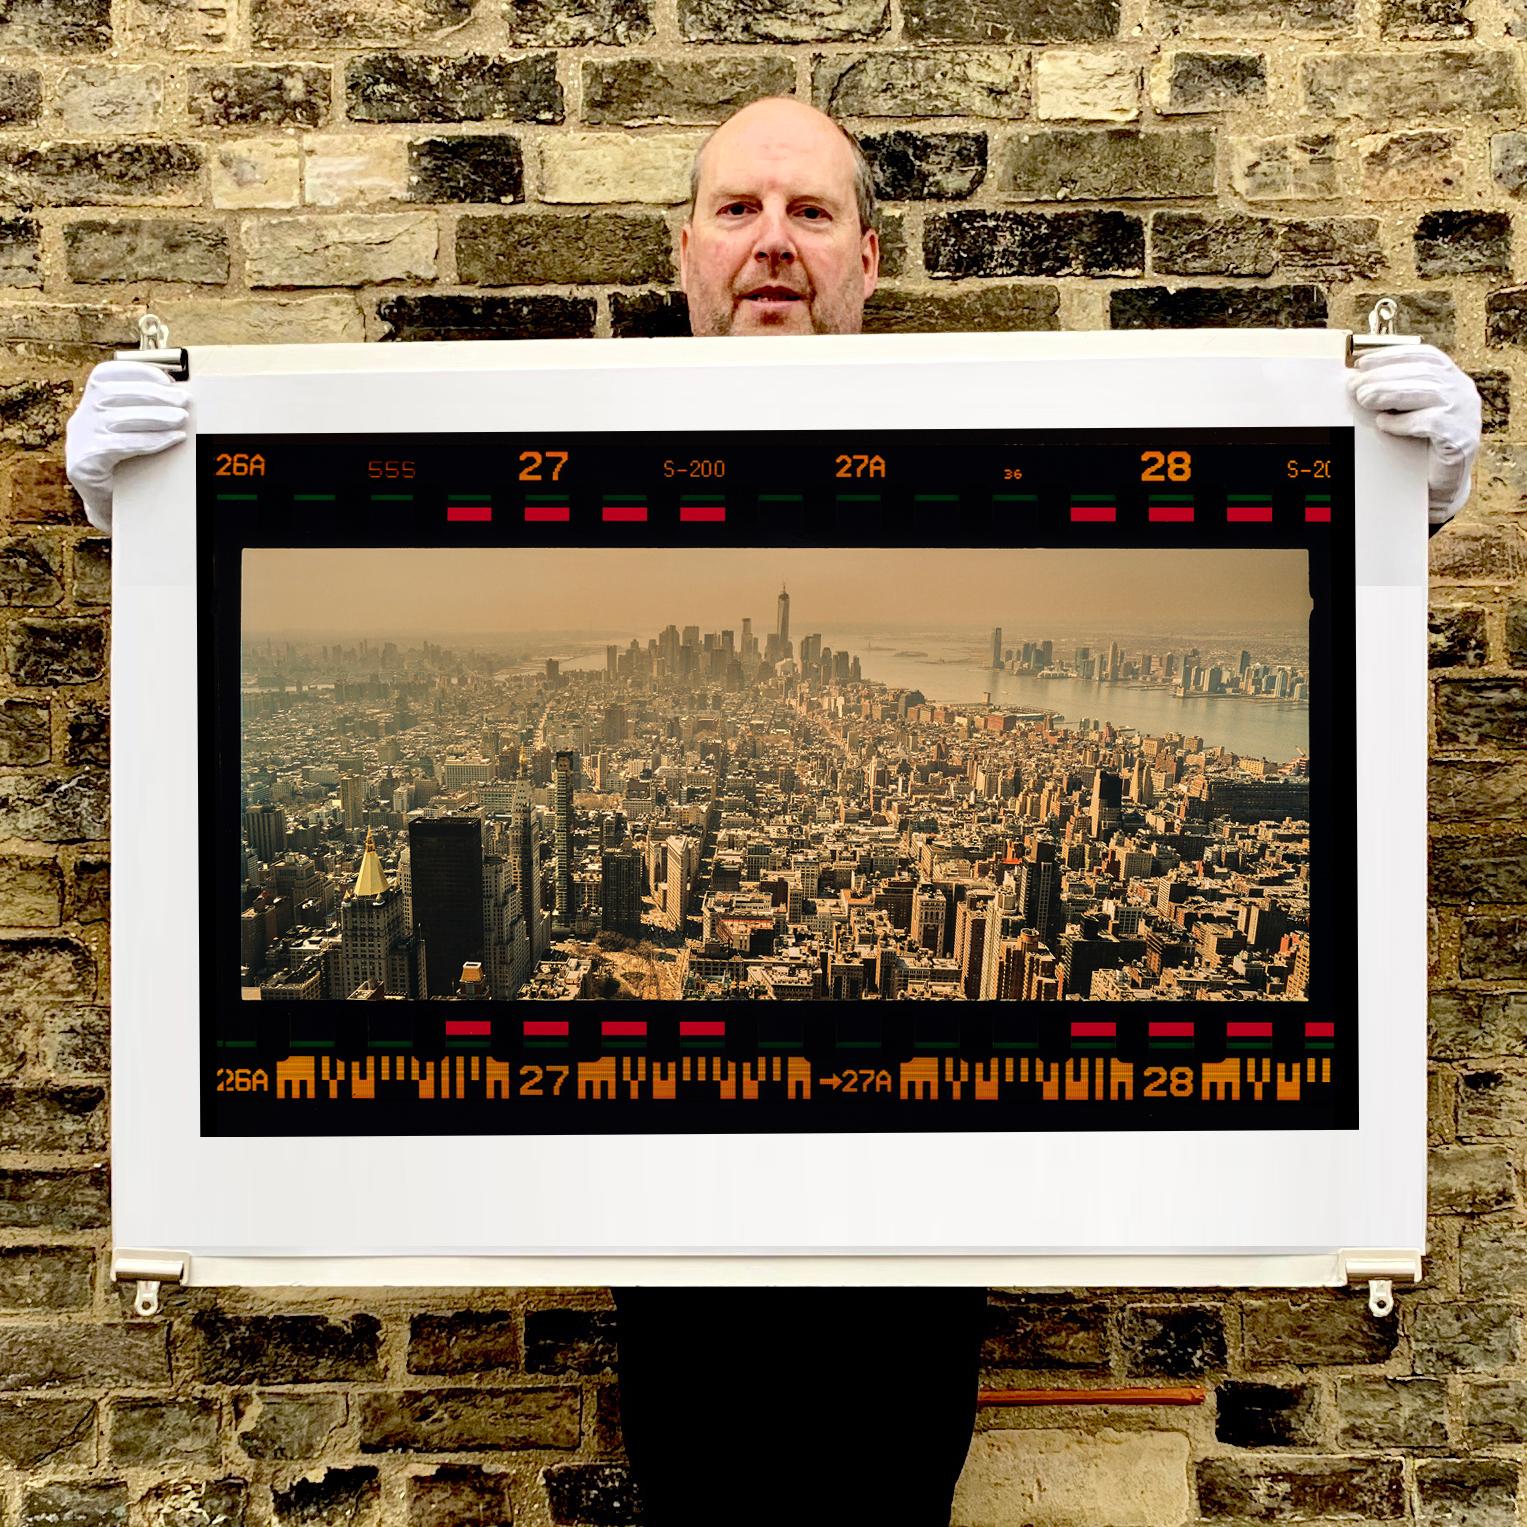 New York Cityscape, Panoramafoto mit der Skyline von Manhattan aus Richard Heeps Serie The Streets of New York.

Dieses Kunstwerk ist ein auf 25 Exemplare limitierter fotografischer Glanzabzug vom Negativ, trocken auf Aluminium aufgezogen, in einem